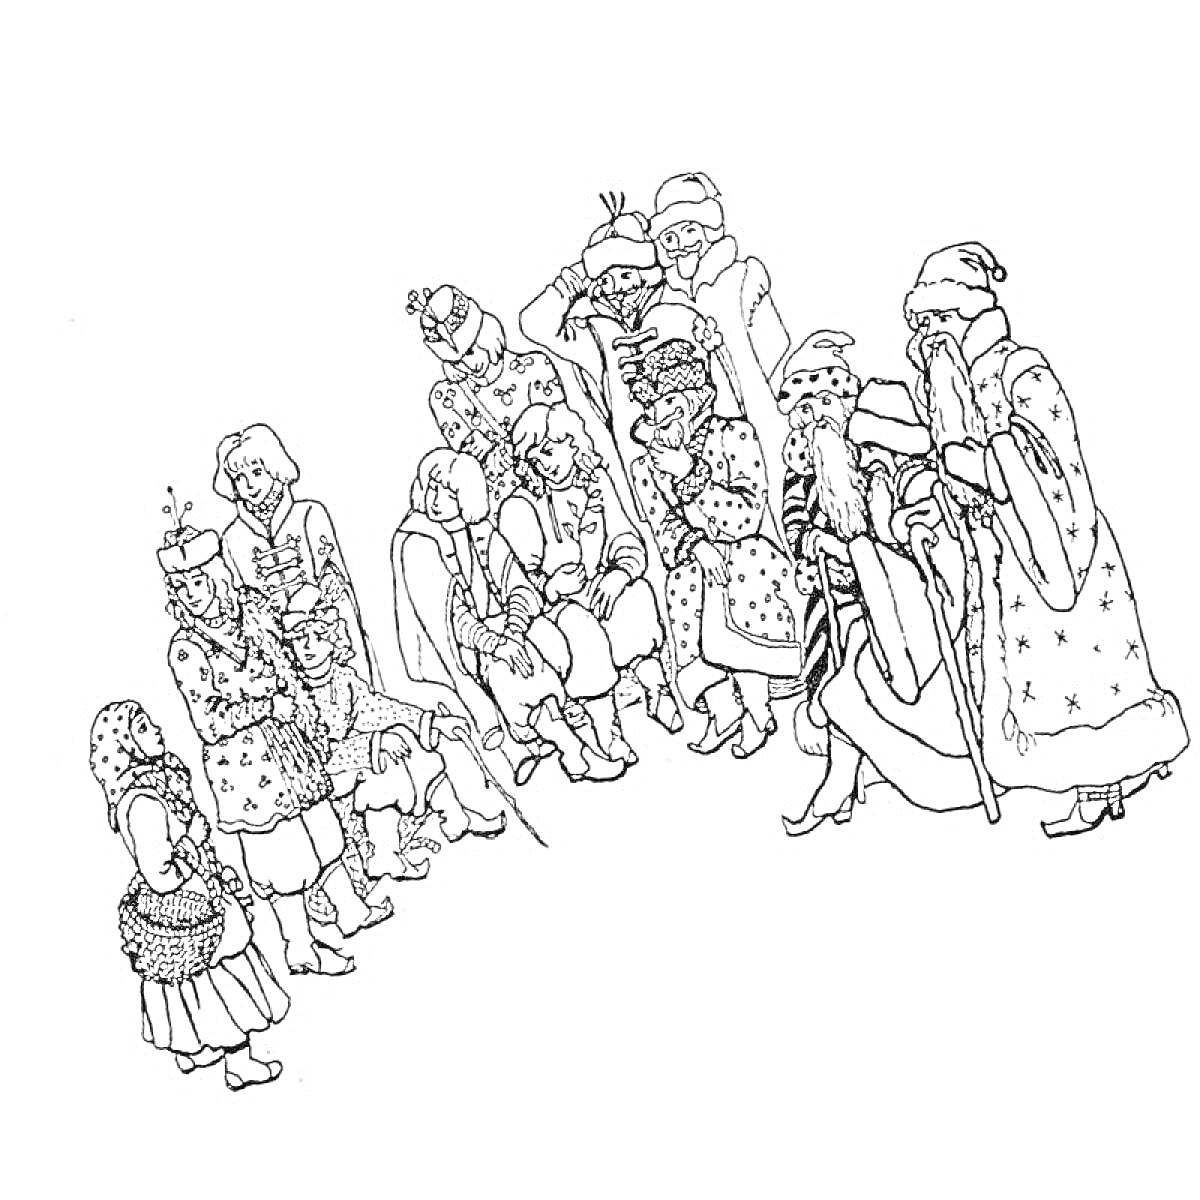 Раскраска Группа людей в традиционной русской одежде, некоторые из них стоят, а другие сидят, одной из женщин на руках корзинка